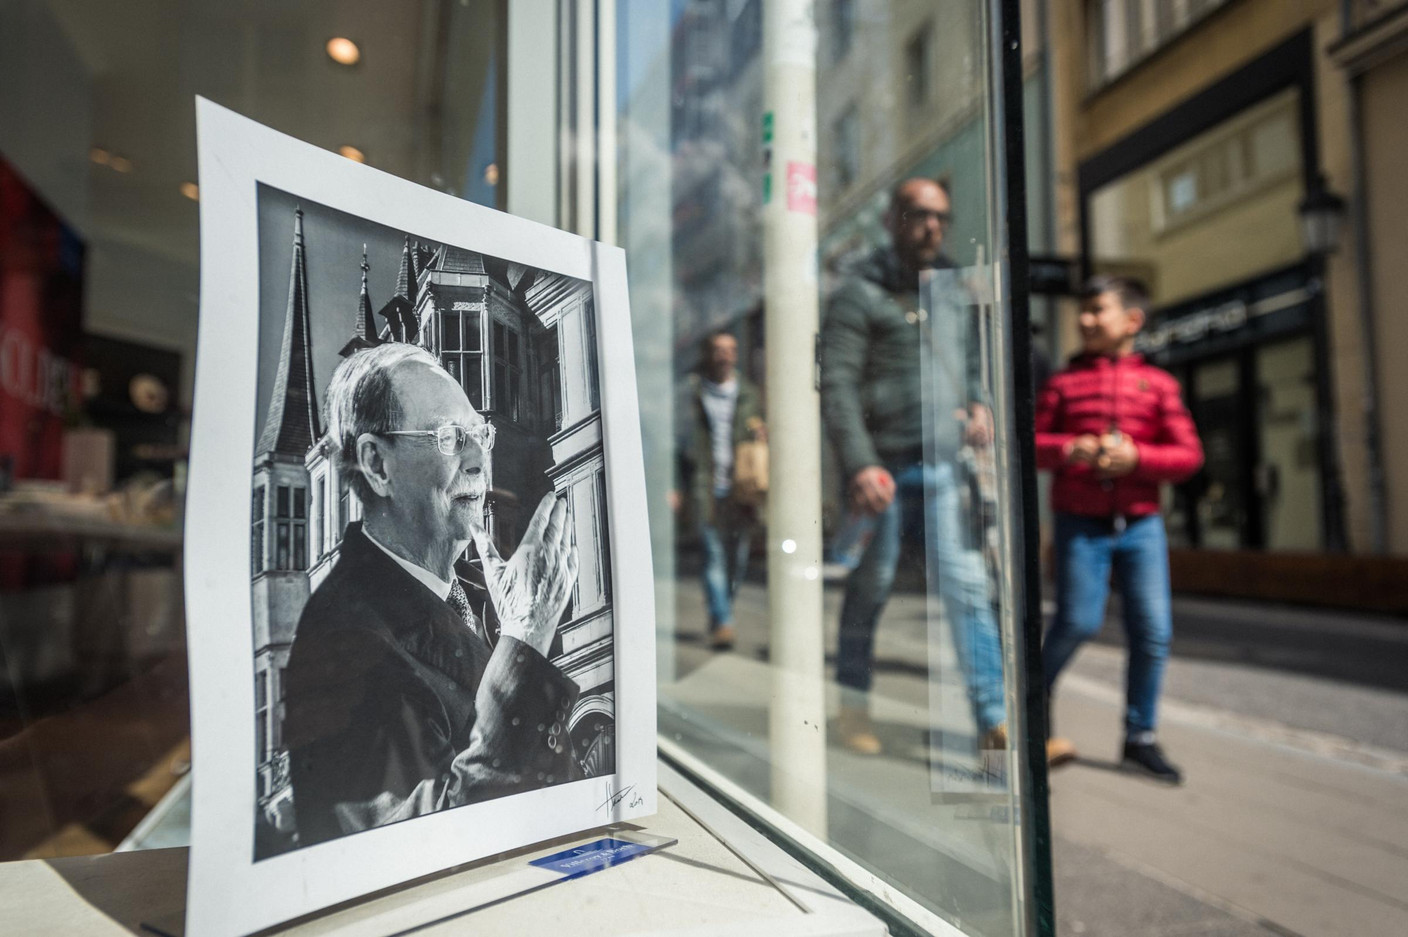 Des portraits en l'hommage du Grand-Duc Jean ont été placés en vitrine par des commerçants. (Photo: Mike Zenari)